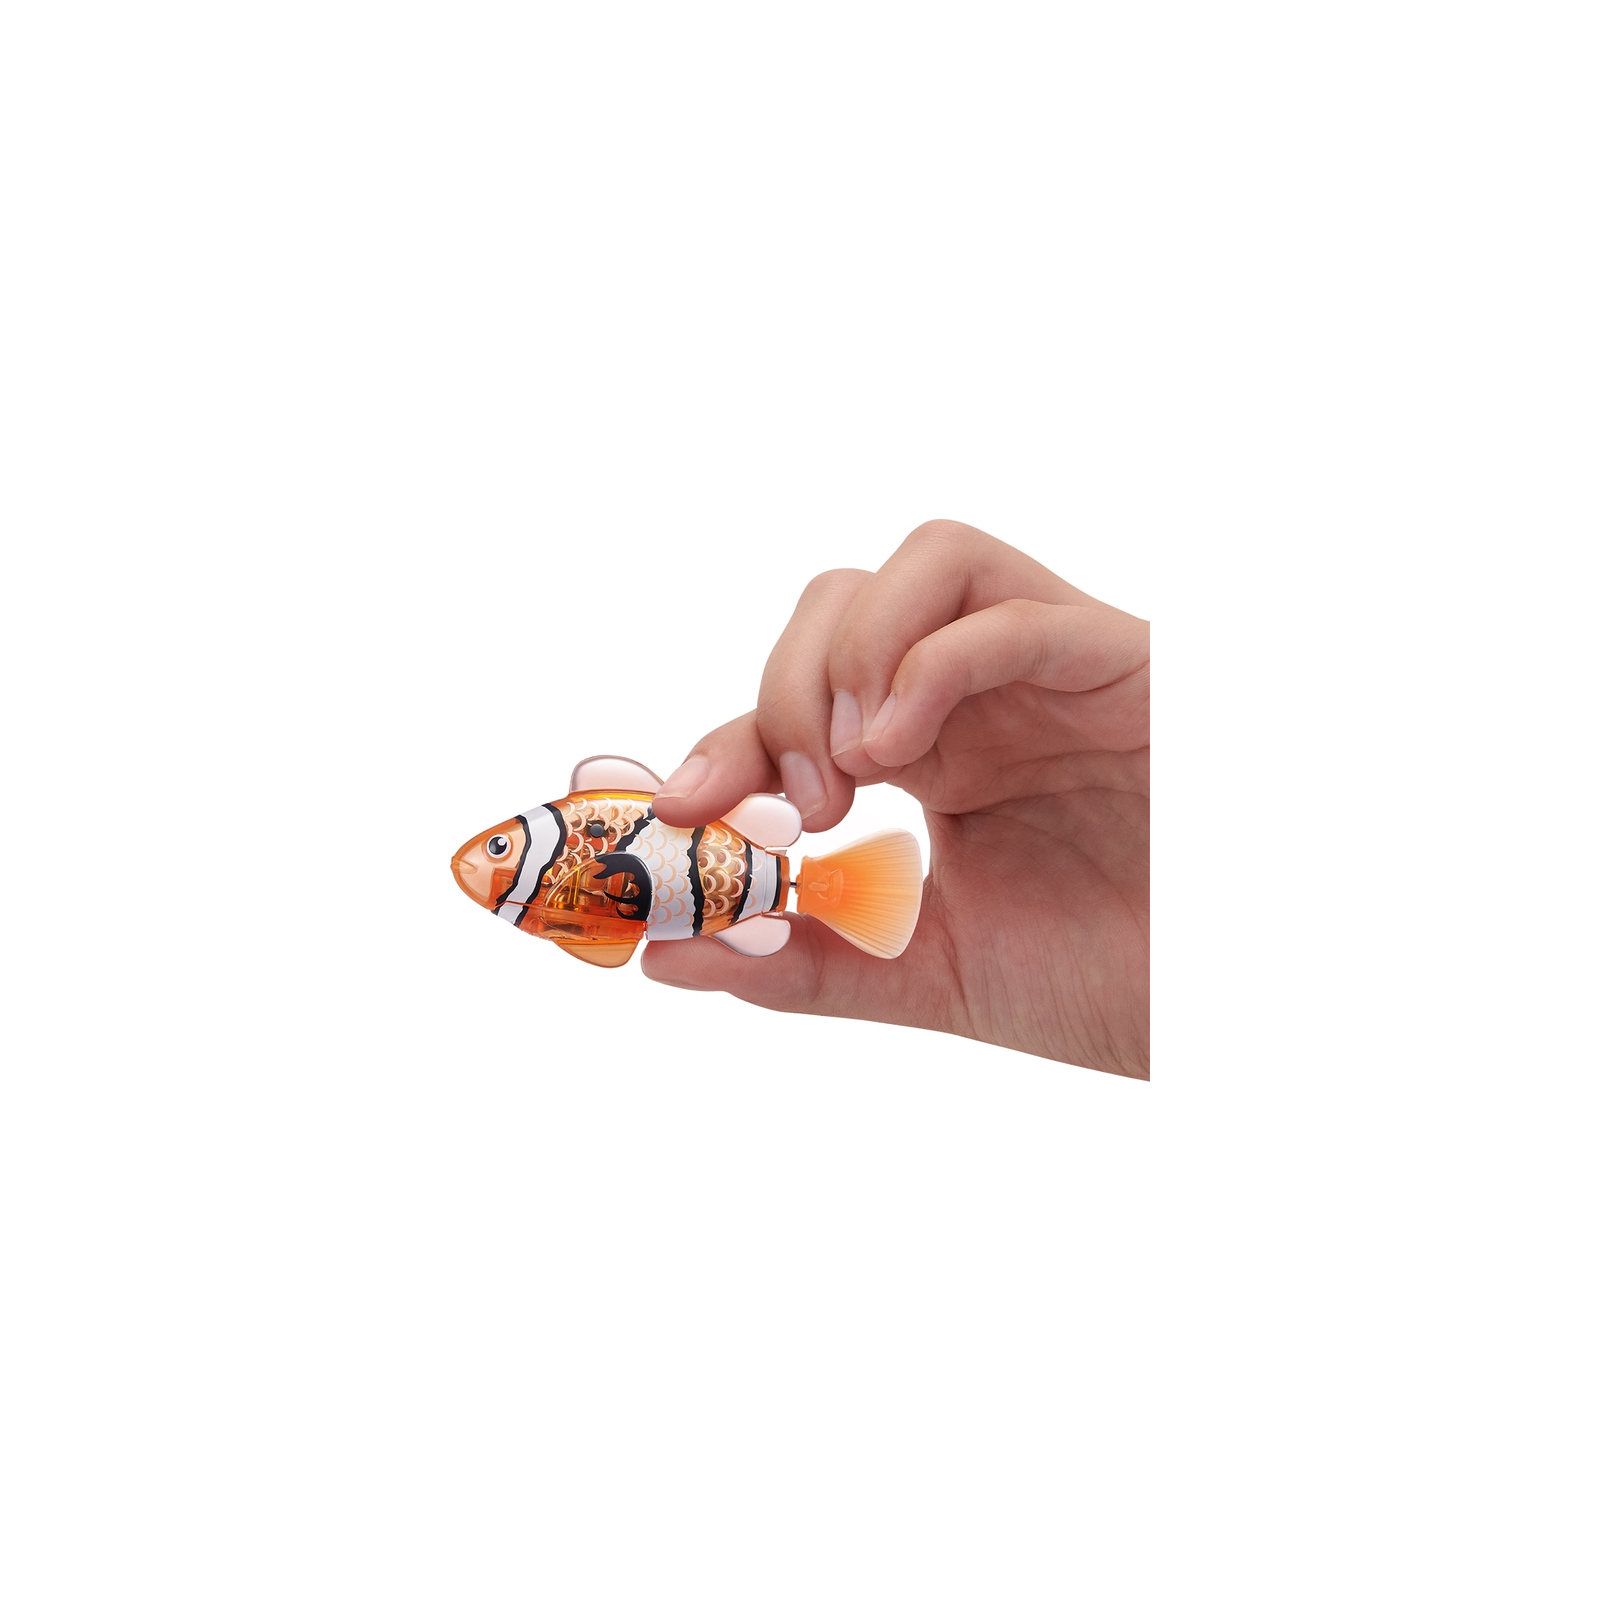 Интерактивная игрушка Pets & Robo Alive S3 - Роборыбка (оранжевая) (7191-5) изображение 4